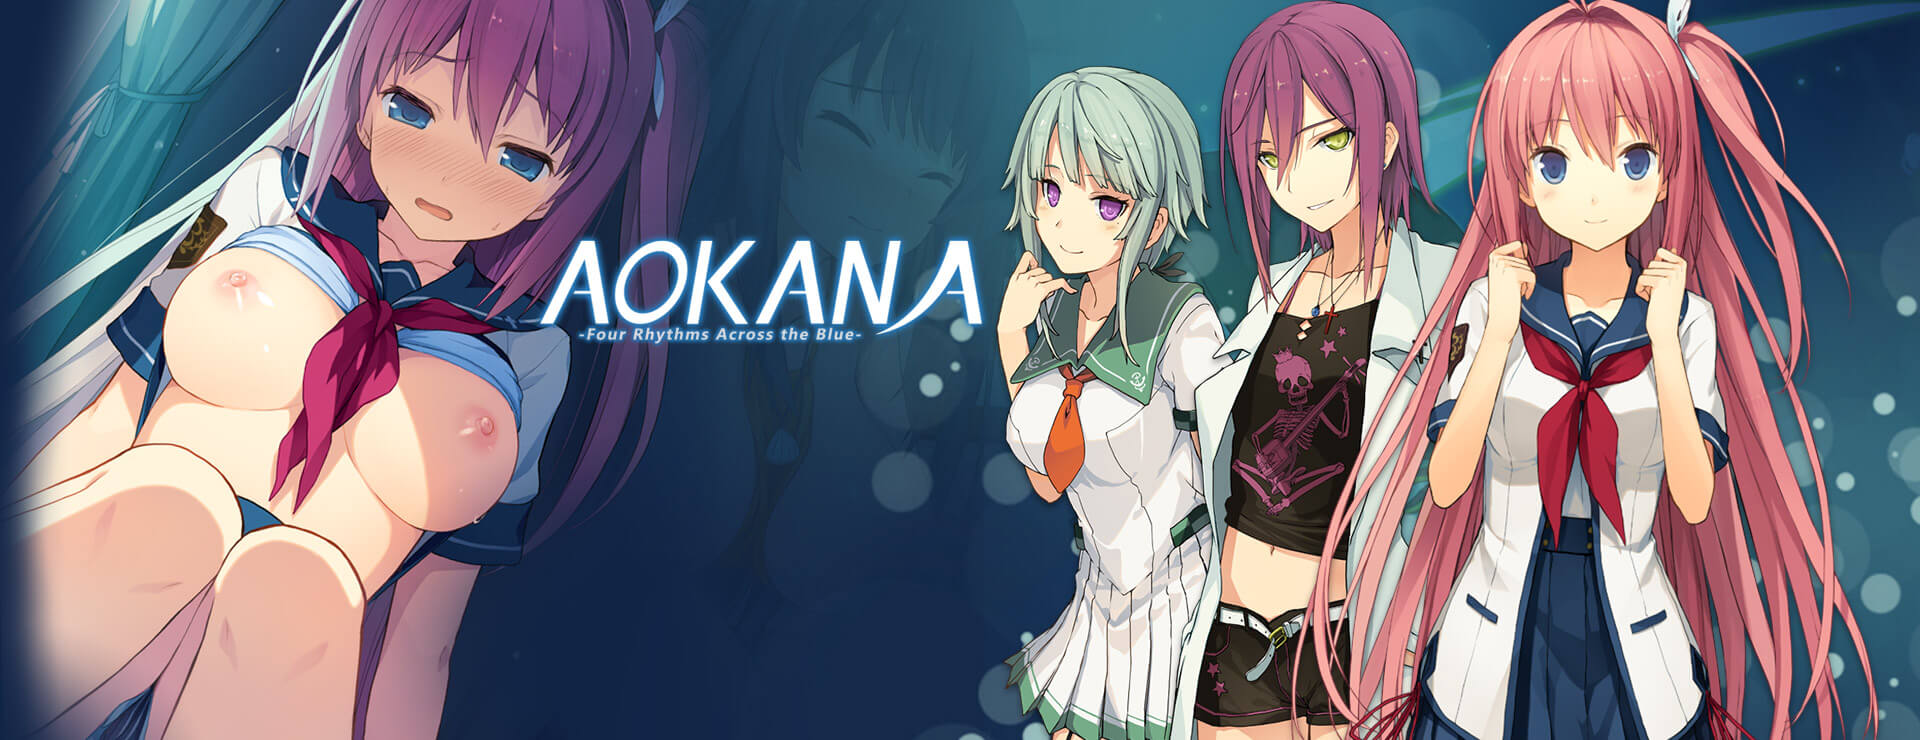 Aokana - Four Rhythms Across the Blue - Visual Novel Game